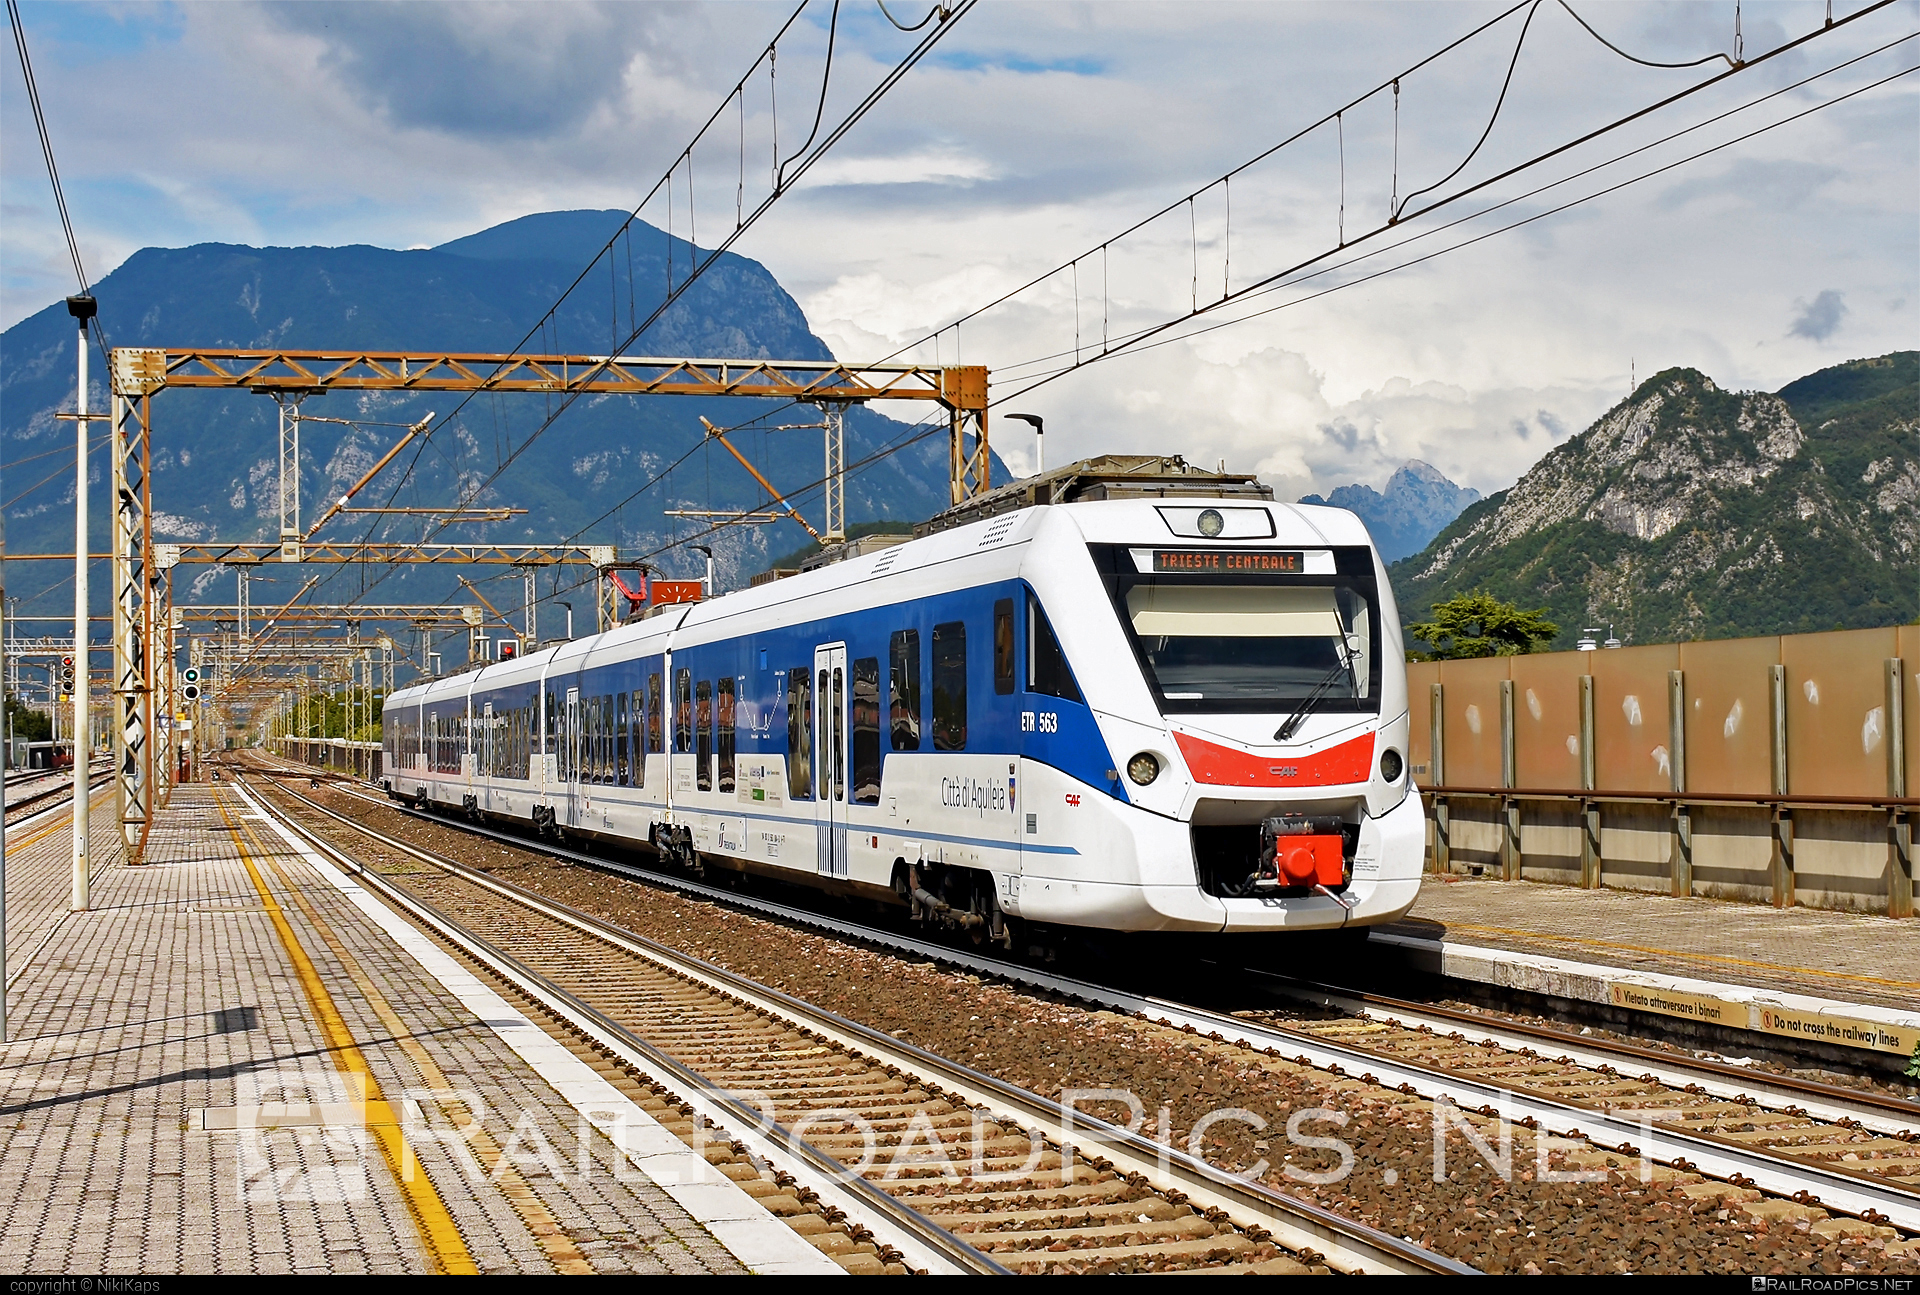 CAF Civity - 563 004-2 operated by Trenitalia S.p.A. #ConstruccionesYAuxiliarDeFerrocarriles #caf #cafCivity #civity #ferroviedellostato #fs #fsitaliane #trenitalia #trenitaliaspa